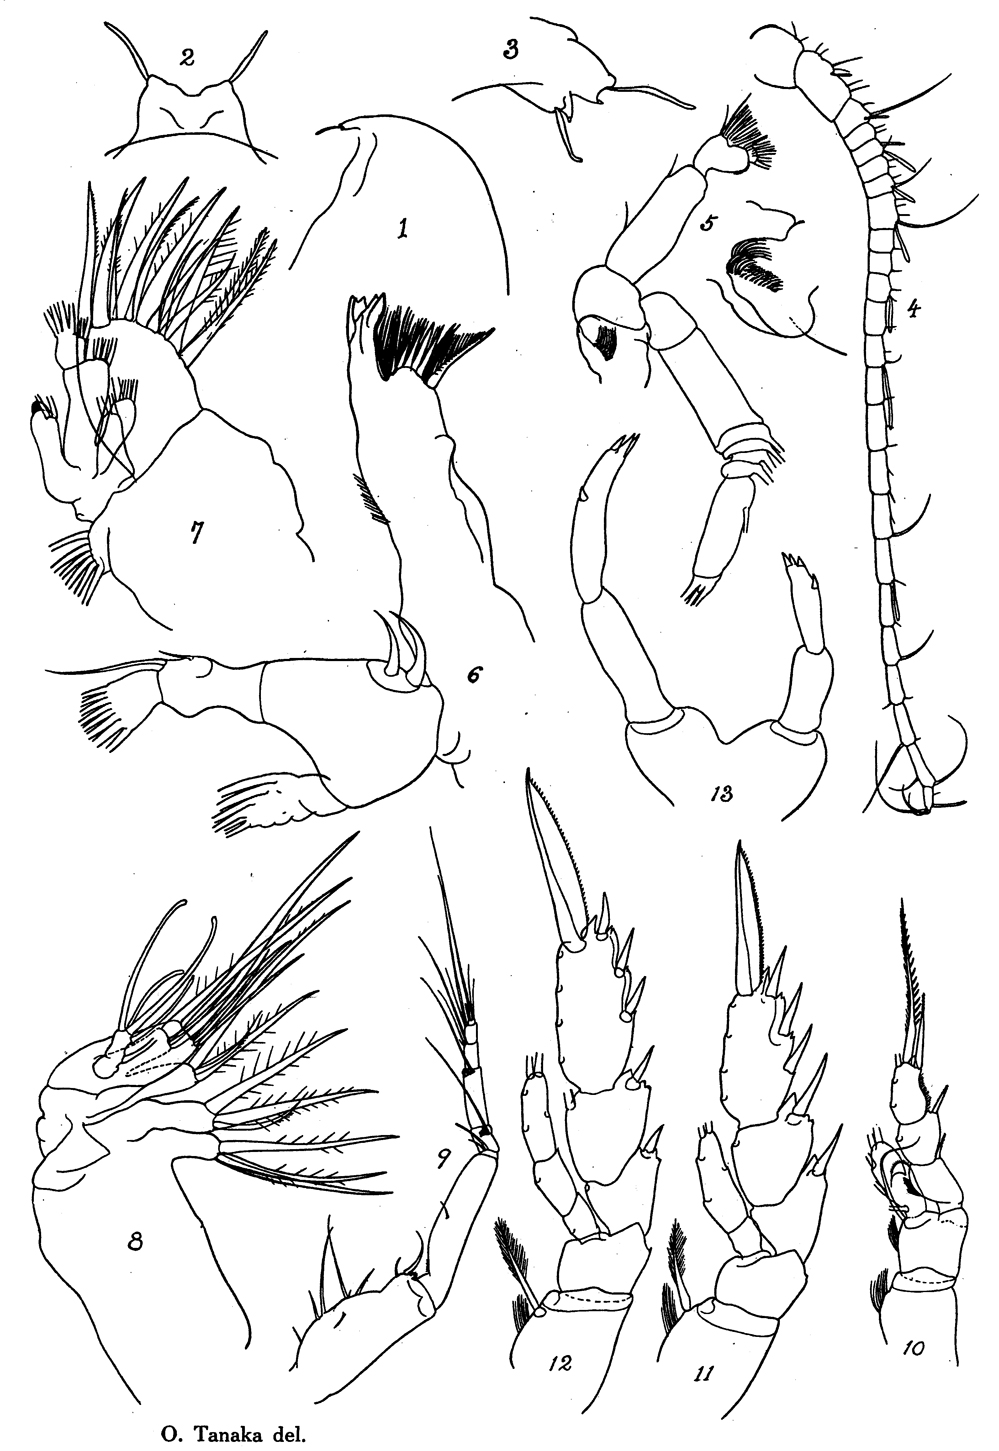 Espce Undinella frontalis - Planche 5 de figures morphologiques